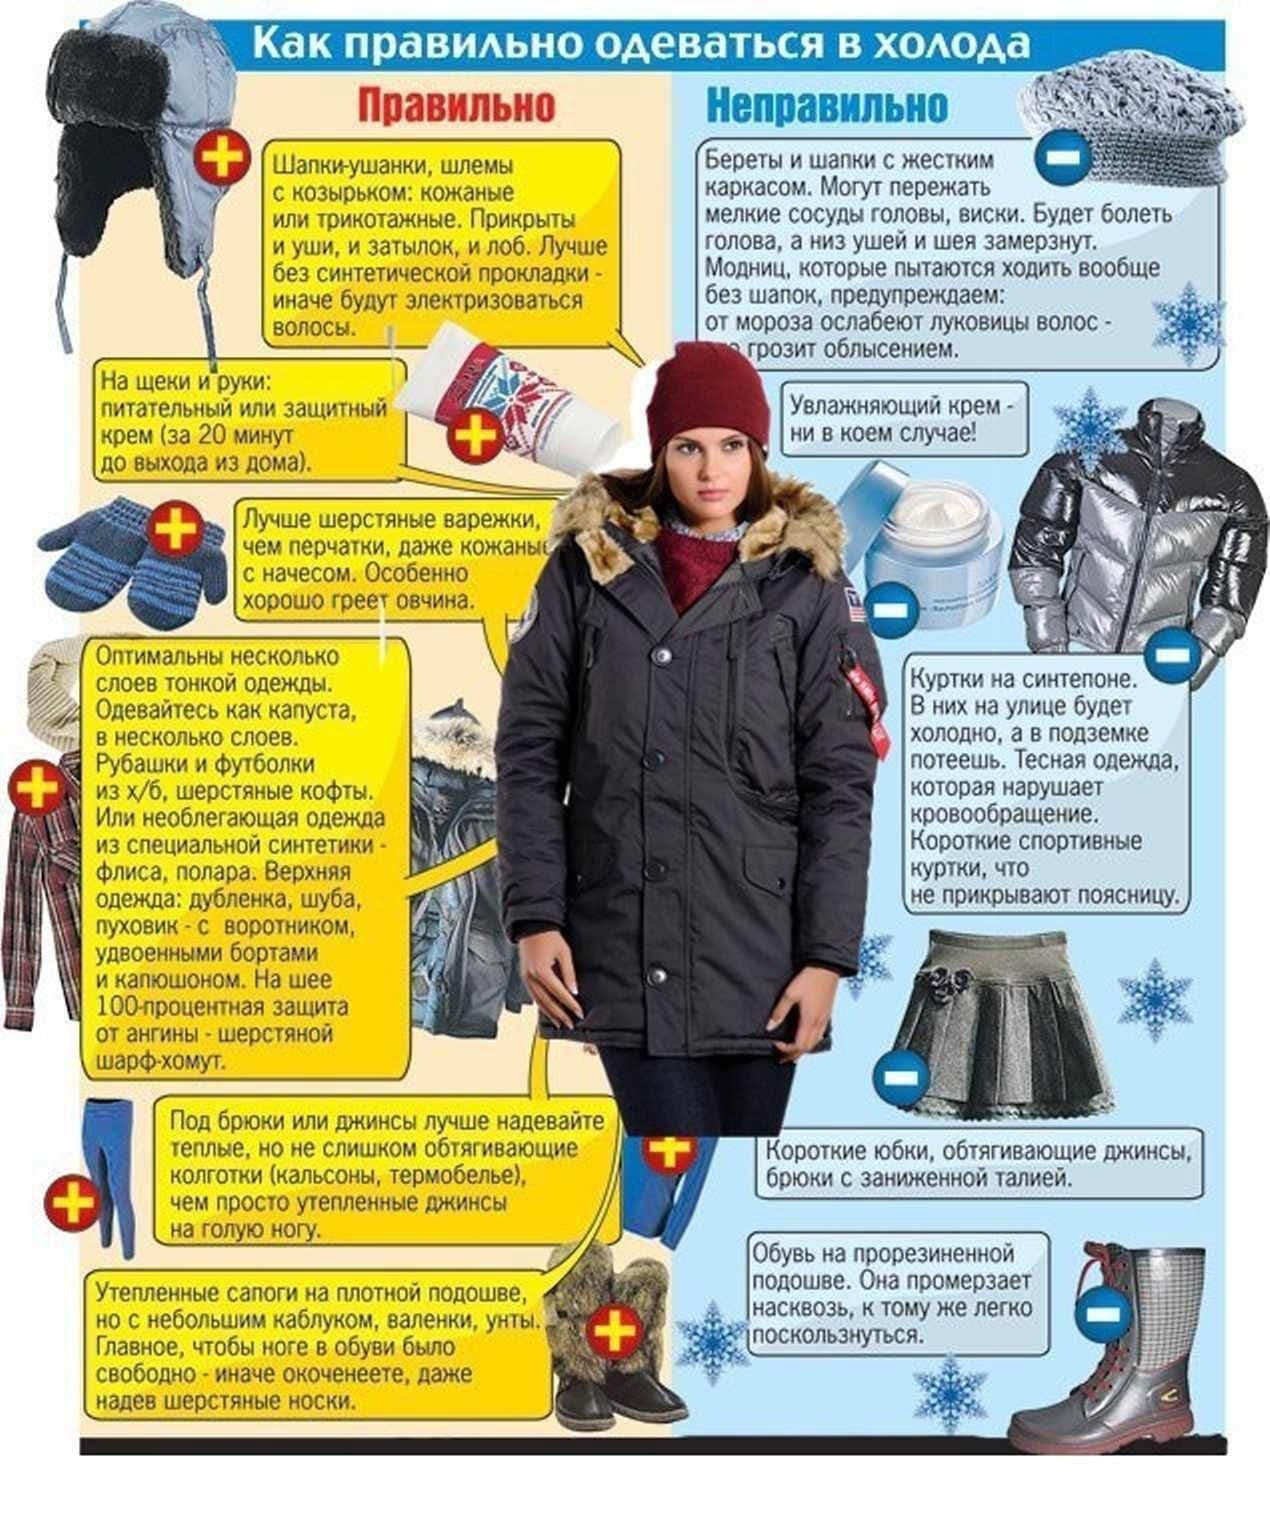 Холодно 25 30. Правильная одежда зимой. КВК правилтео одеватся. Как правильно одеваться зимой. Одеваться зимой в Мороз.